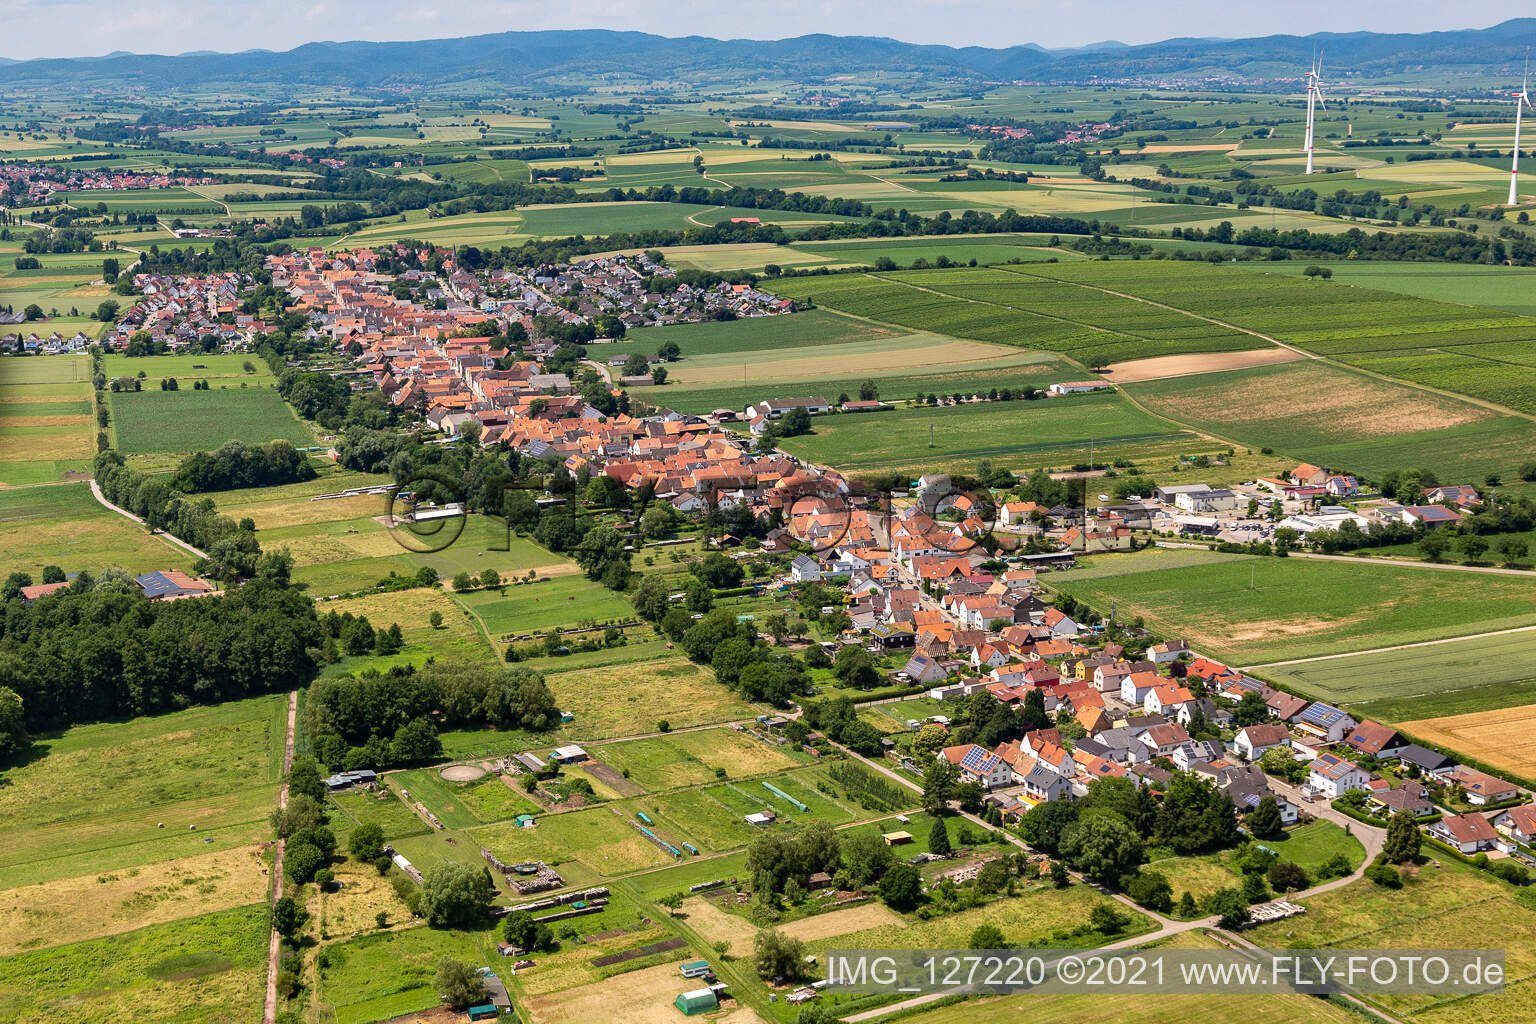 Vue aérienne de Vue sur la commune en bordure de champs agricoles et de zones agricoles à Freckenfeld dans le département Rhénanie-Palatinat, Allemagne